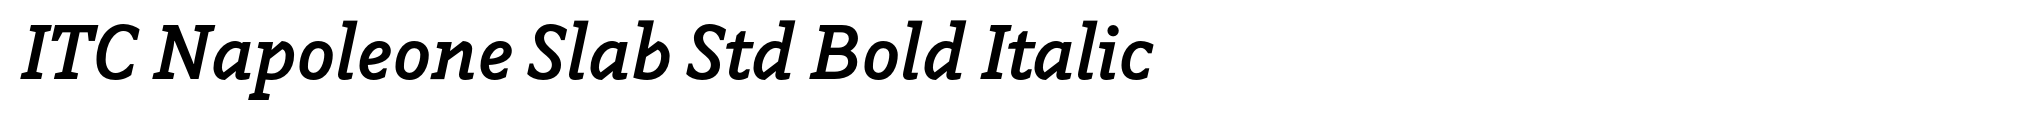 ITC Napoleone Slab Std Bold Italic image